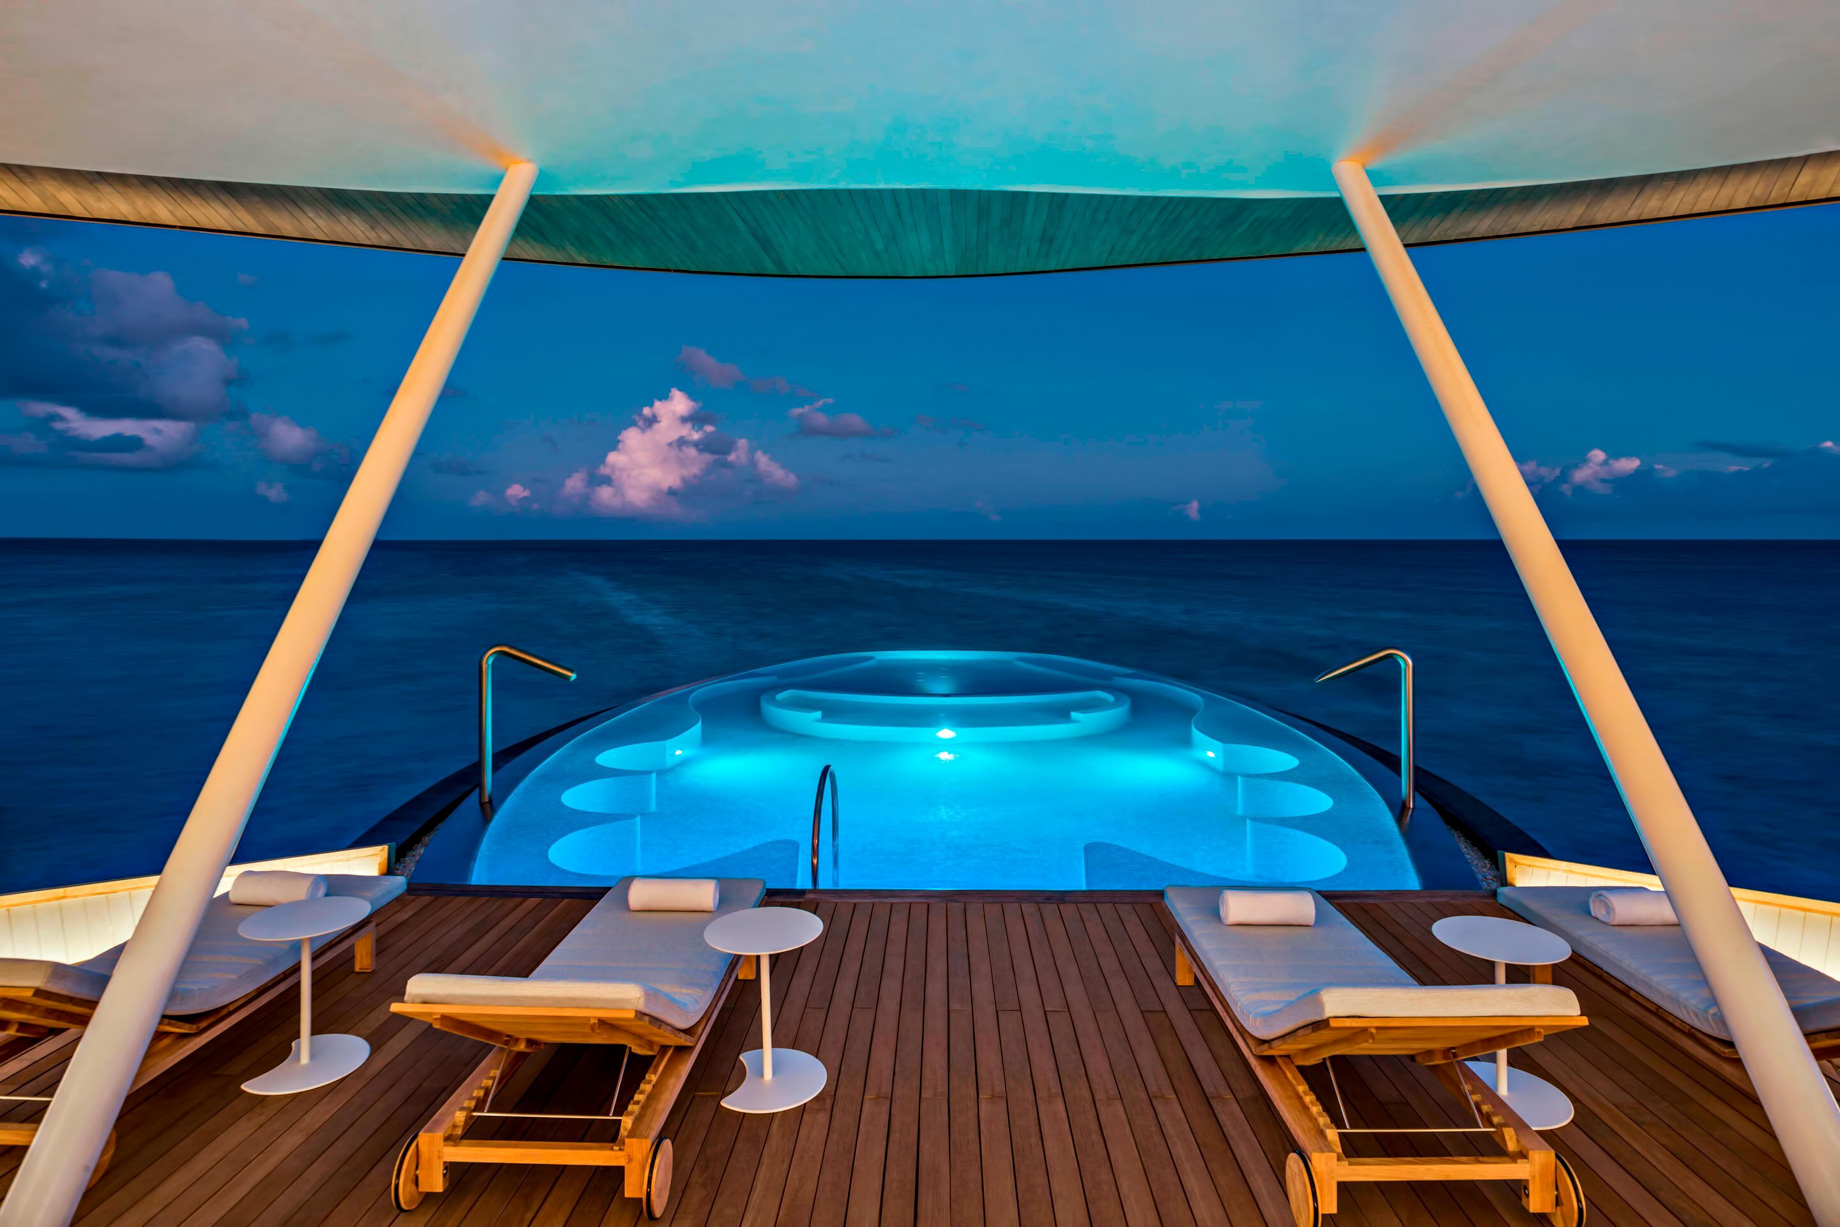 The St. Regis Maldives Vommuli Resort – Dhaalu Atoll, Maldives – Iridium Spa Pool Night